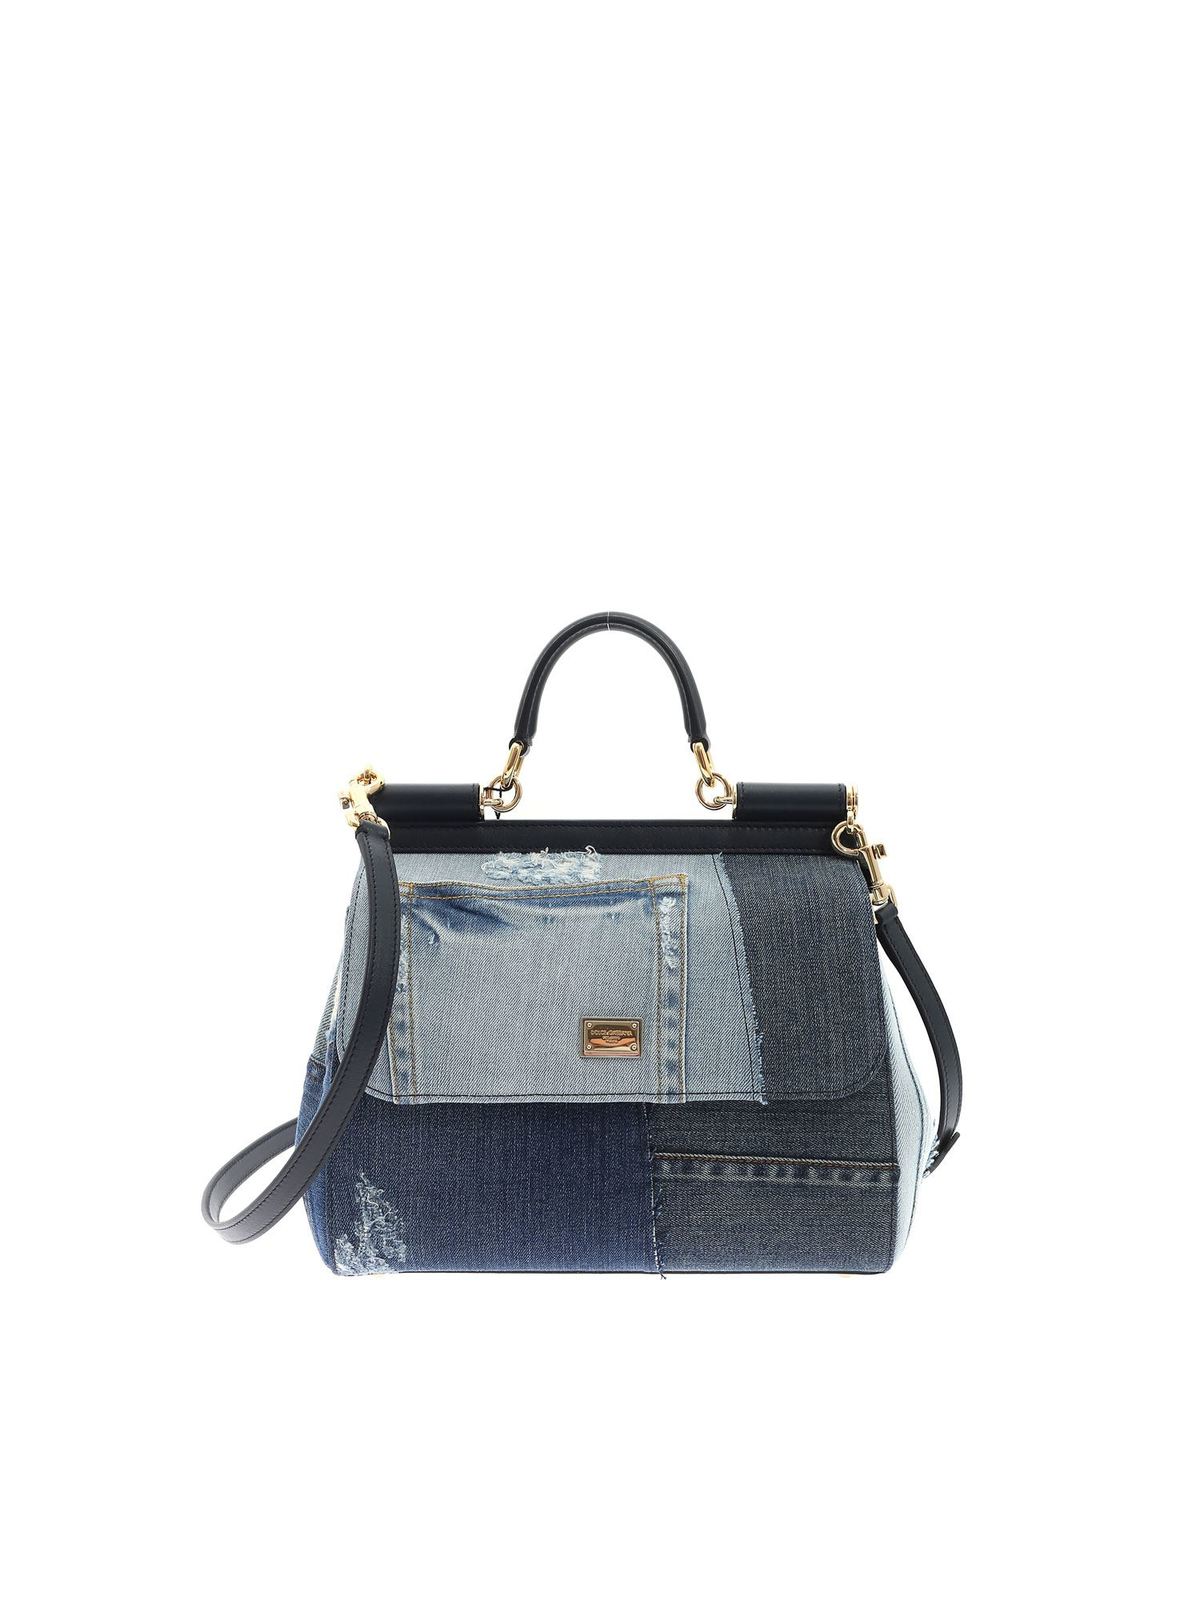 Dolce & Gabbana Sicily Medium Denim Handbag In Blue